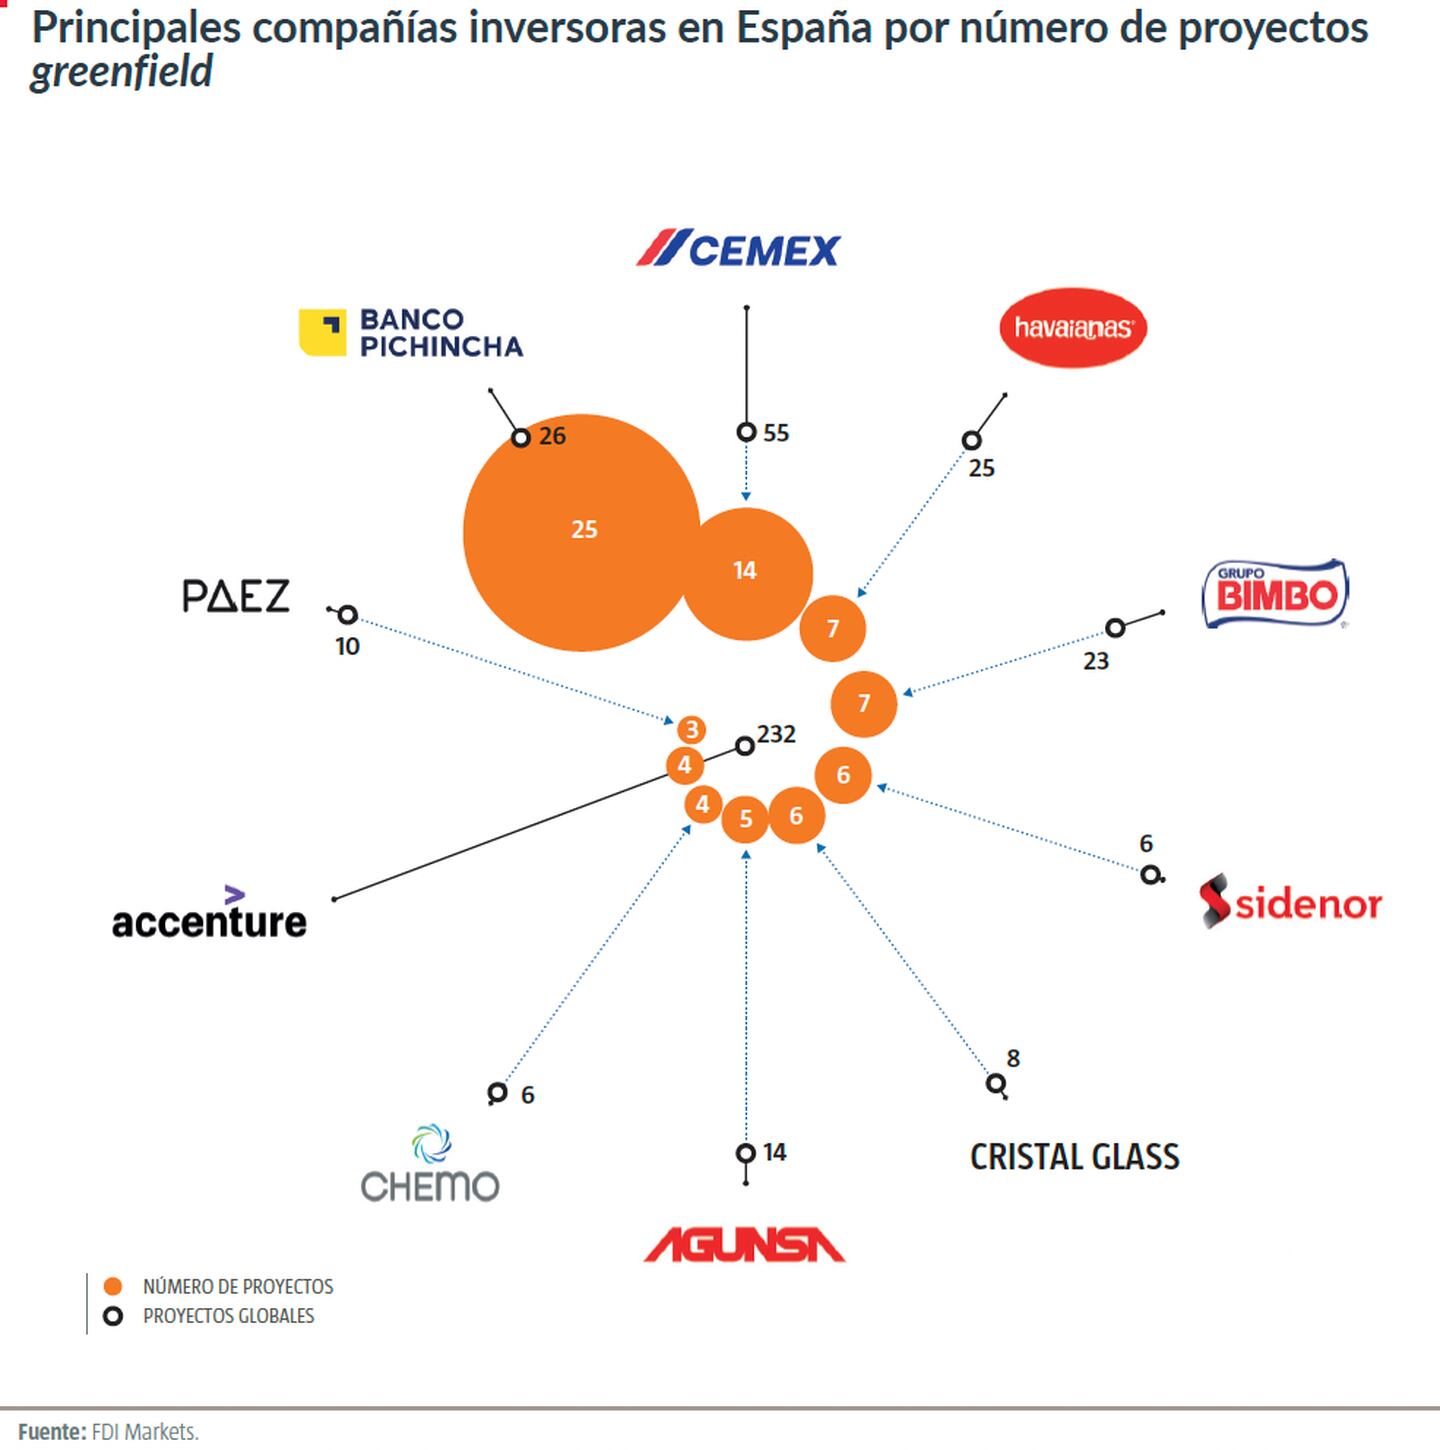 El informe destaca el banco ecuatoriano Pichincha, la brasileña Havaianas, además de las mexicanas CEMEX y grupo Bimbo.dfd